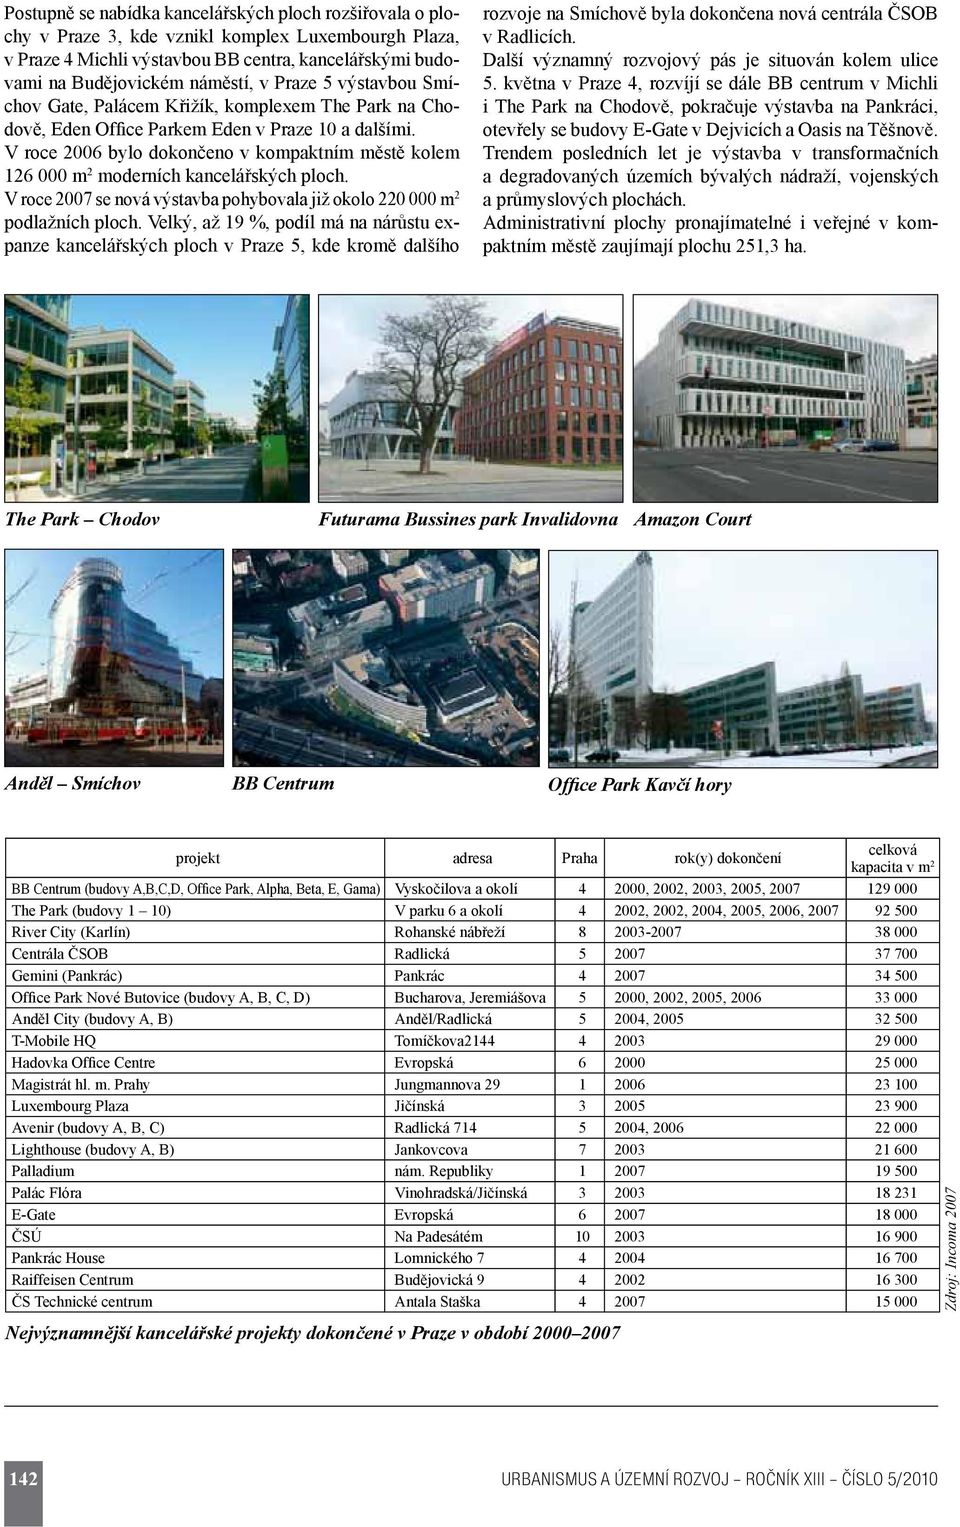 V roce 2006 bylo dokončeno v kompaktním městě kolem 126 000 m 2 moderních kancelářských ploch. V roce 2007 se nová výstavba pohybovala již okolo 220 000 m 2 podlažních ploch.